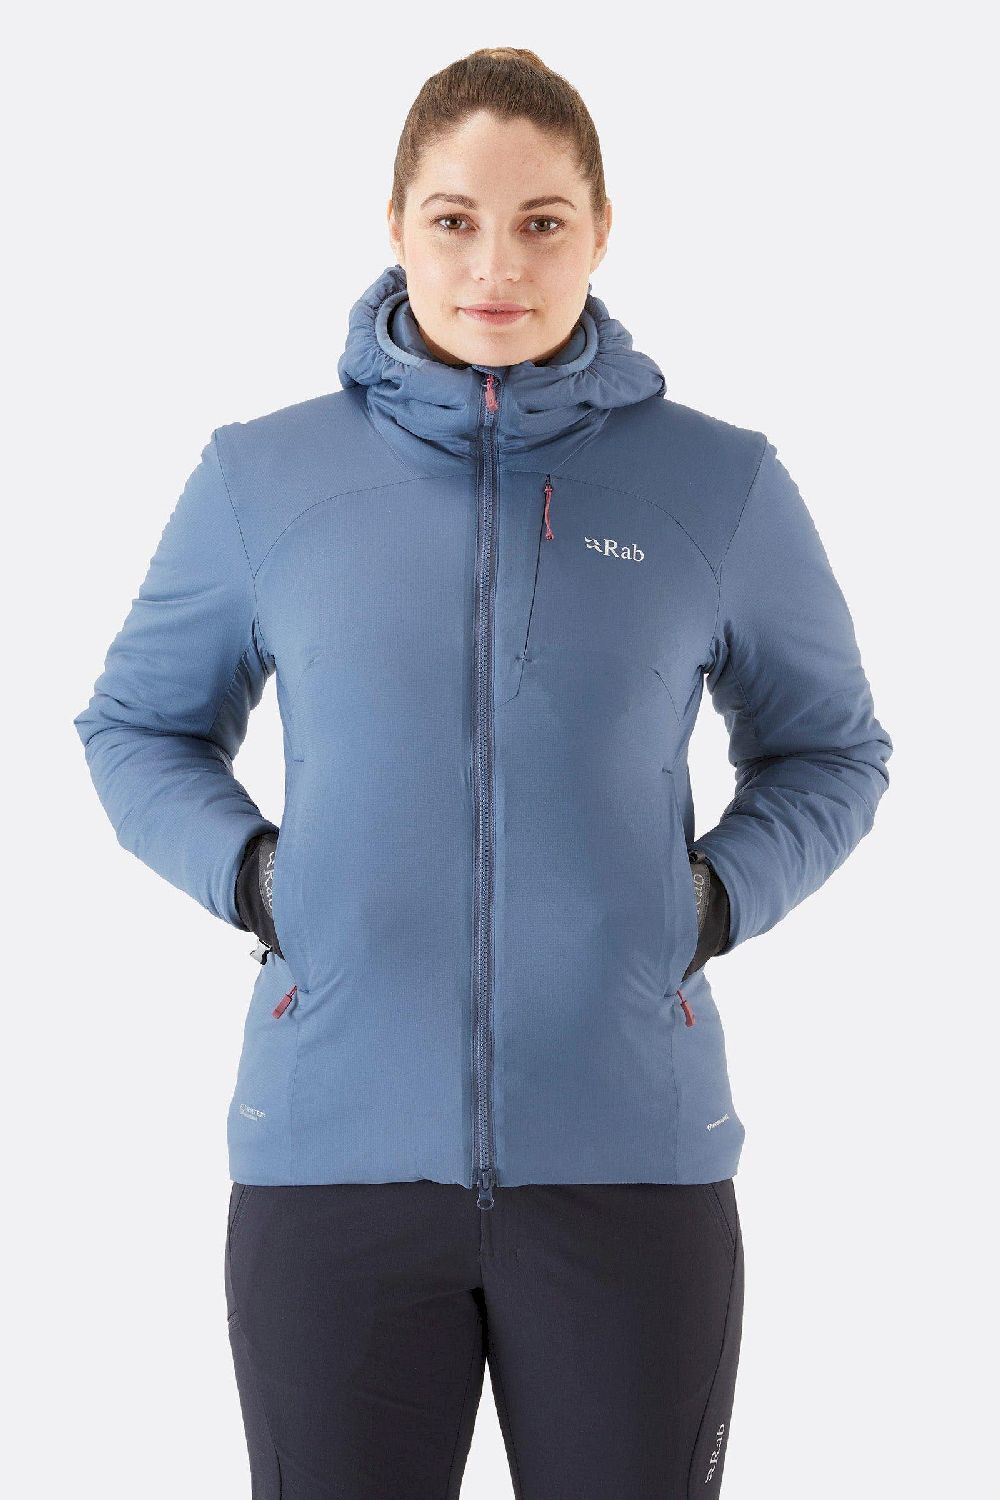 Rab Xenair Alpine Jacket  - Chaqueta de esquí - Mujer